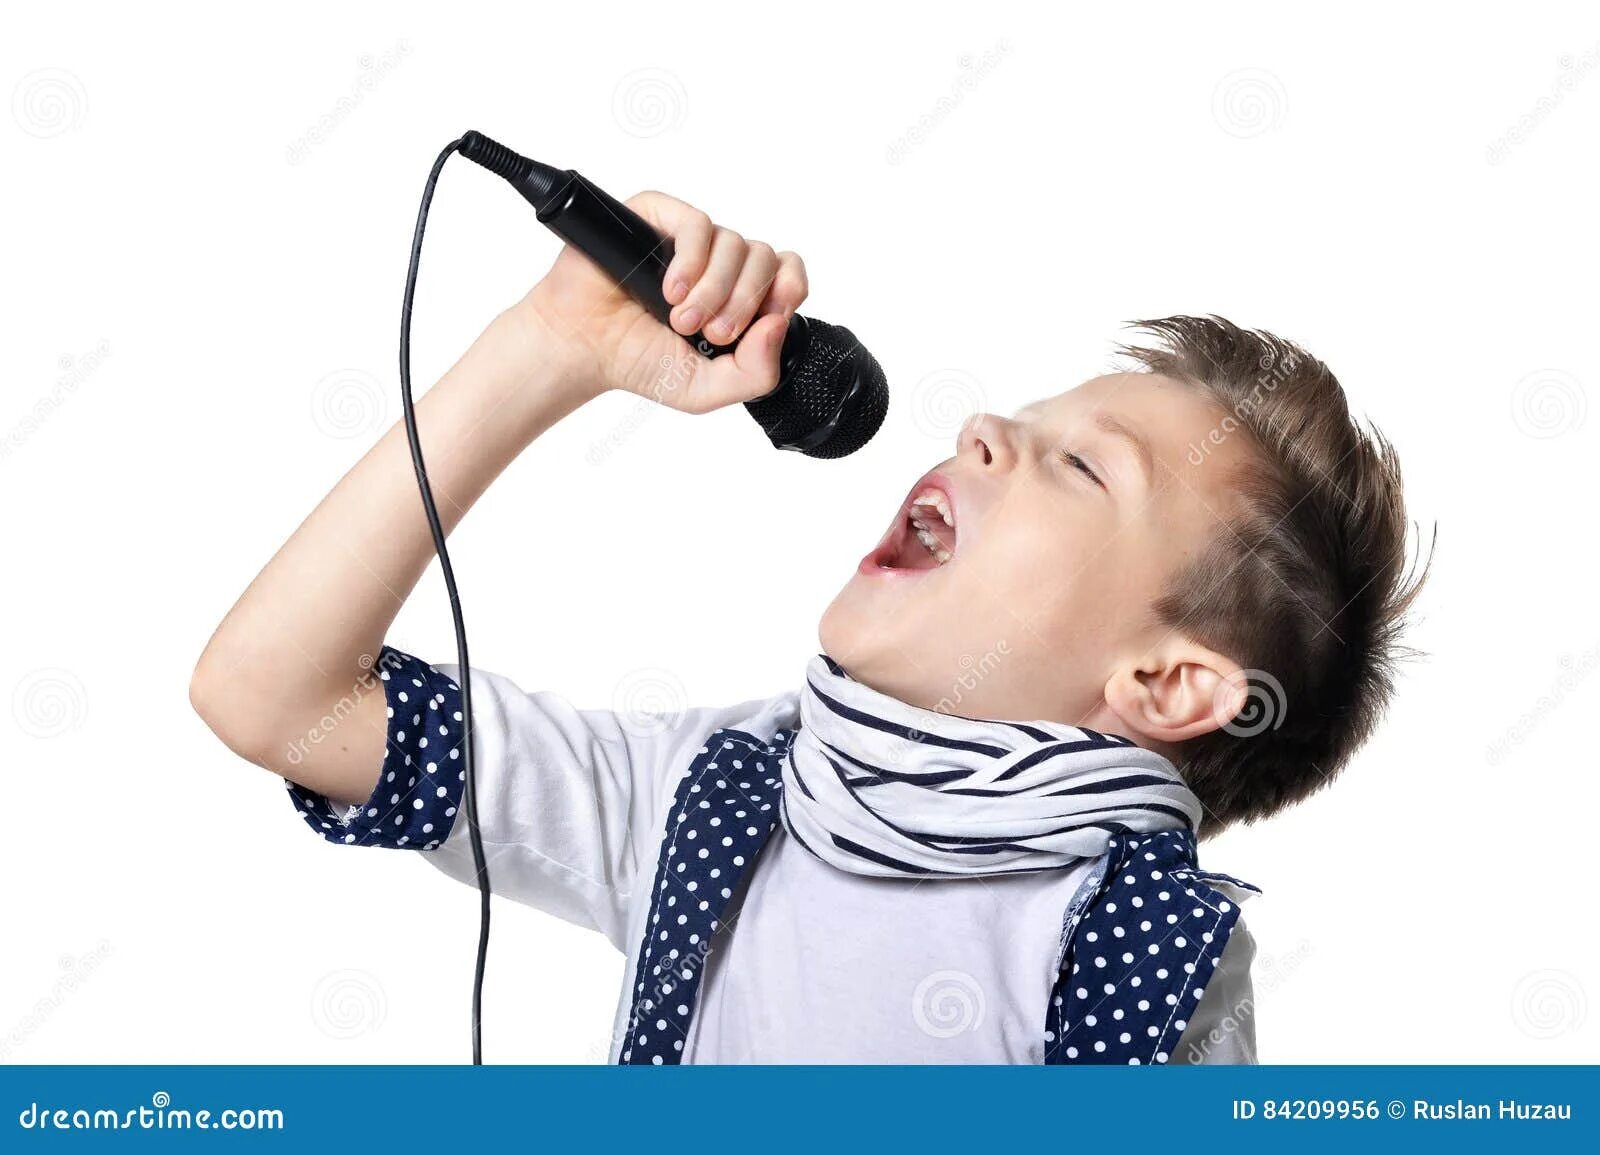 Мини пения. Мальчик поет. Мальчик с микрофоном. Мальчик поет в микрофон. Юноша поет.